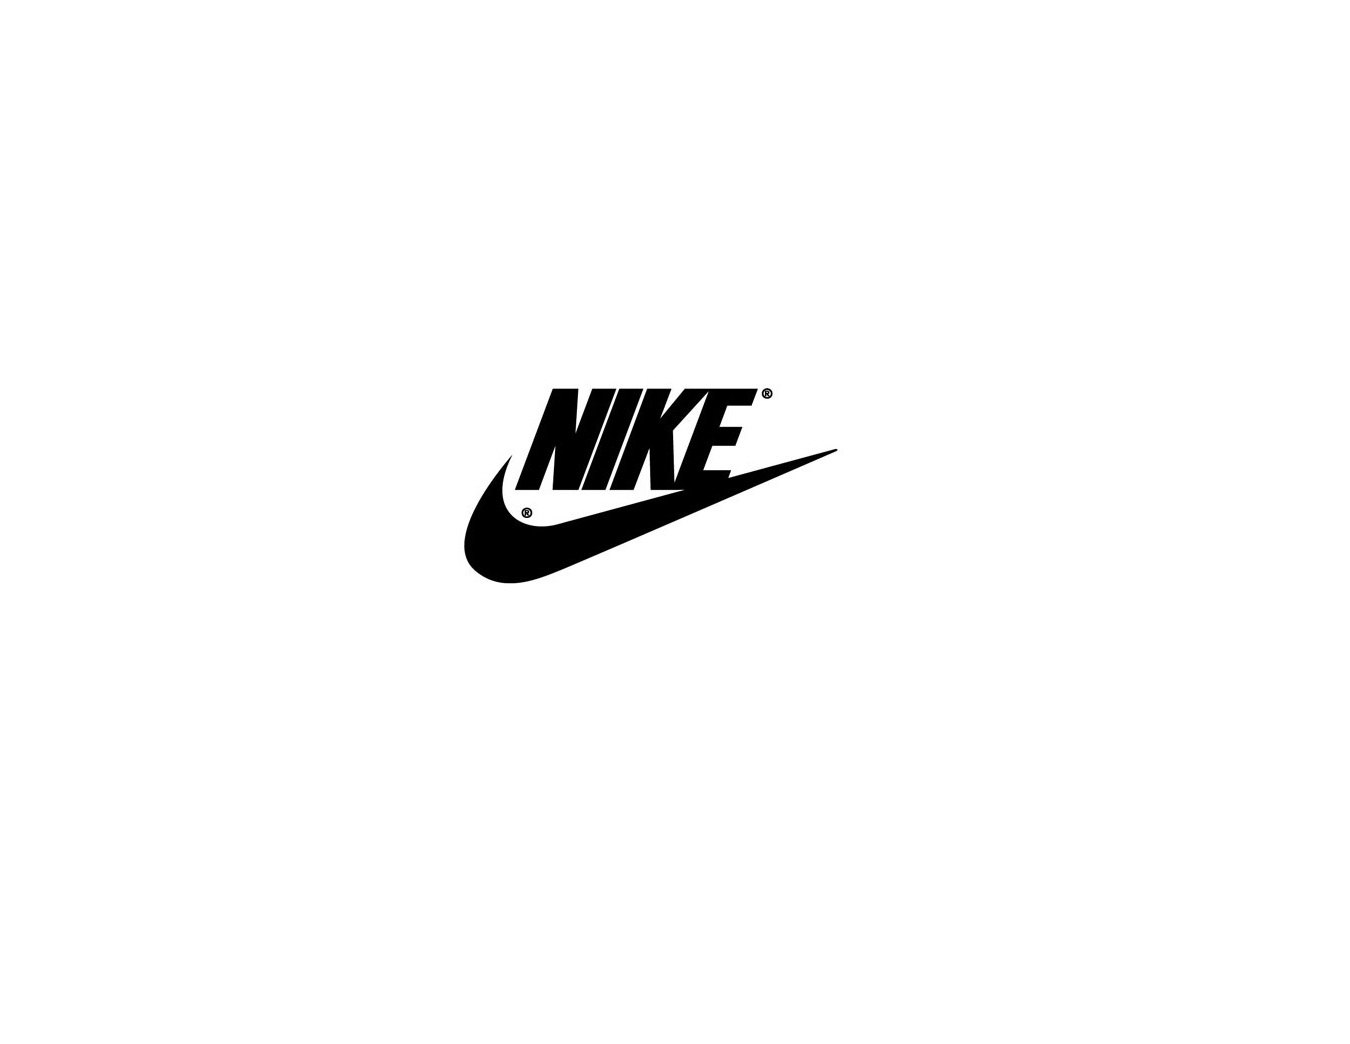 Черный значок найк. Товарный знак найк. Nike логотип на белом фоне. Трафарет найк. Наклейки найк.